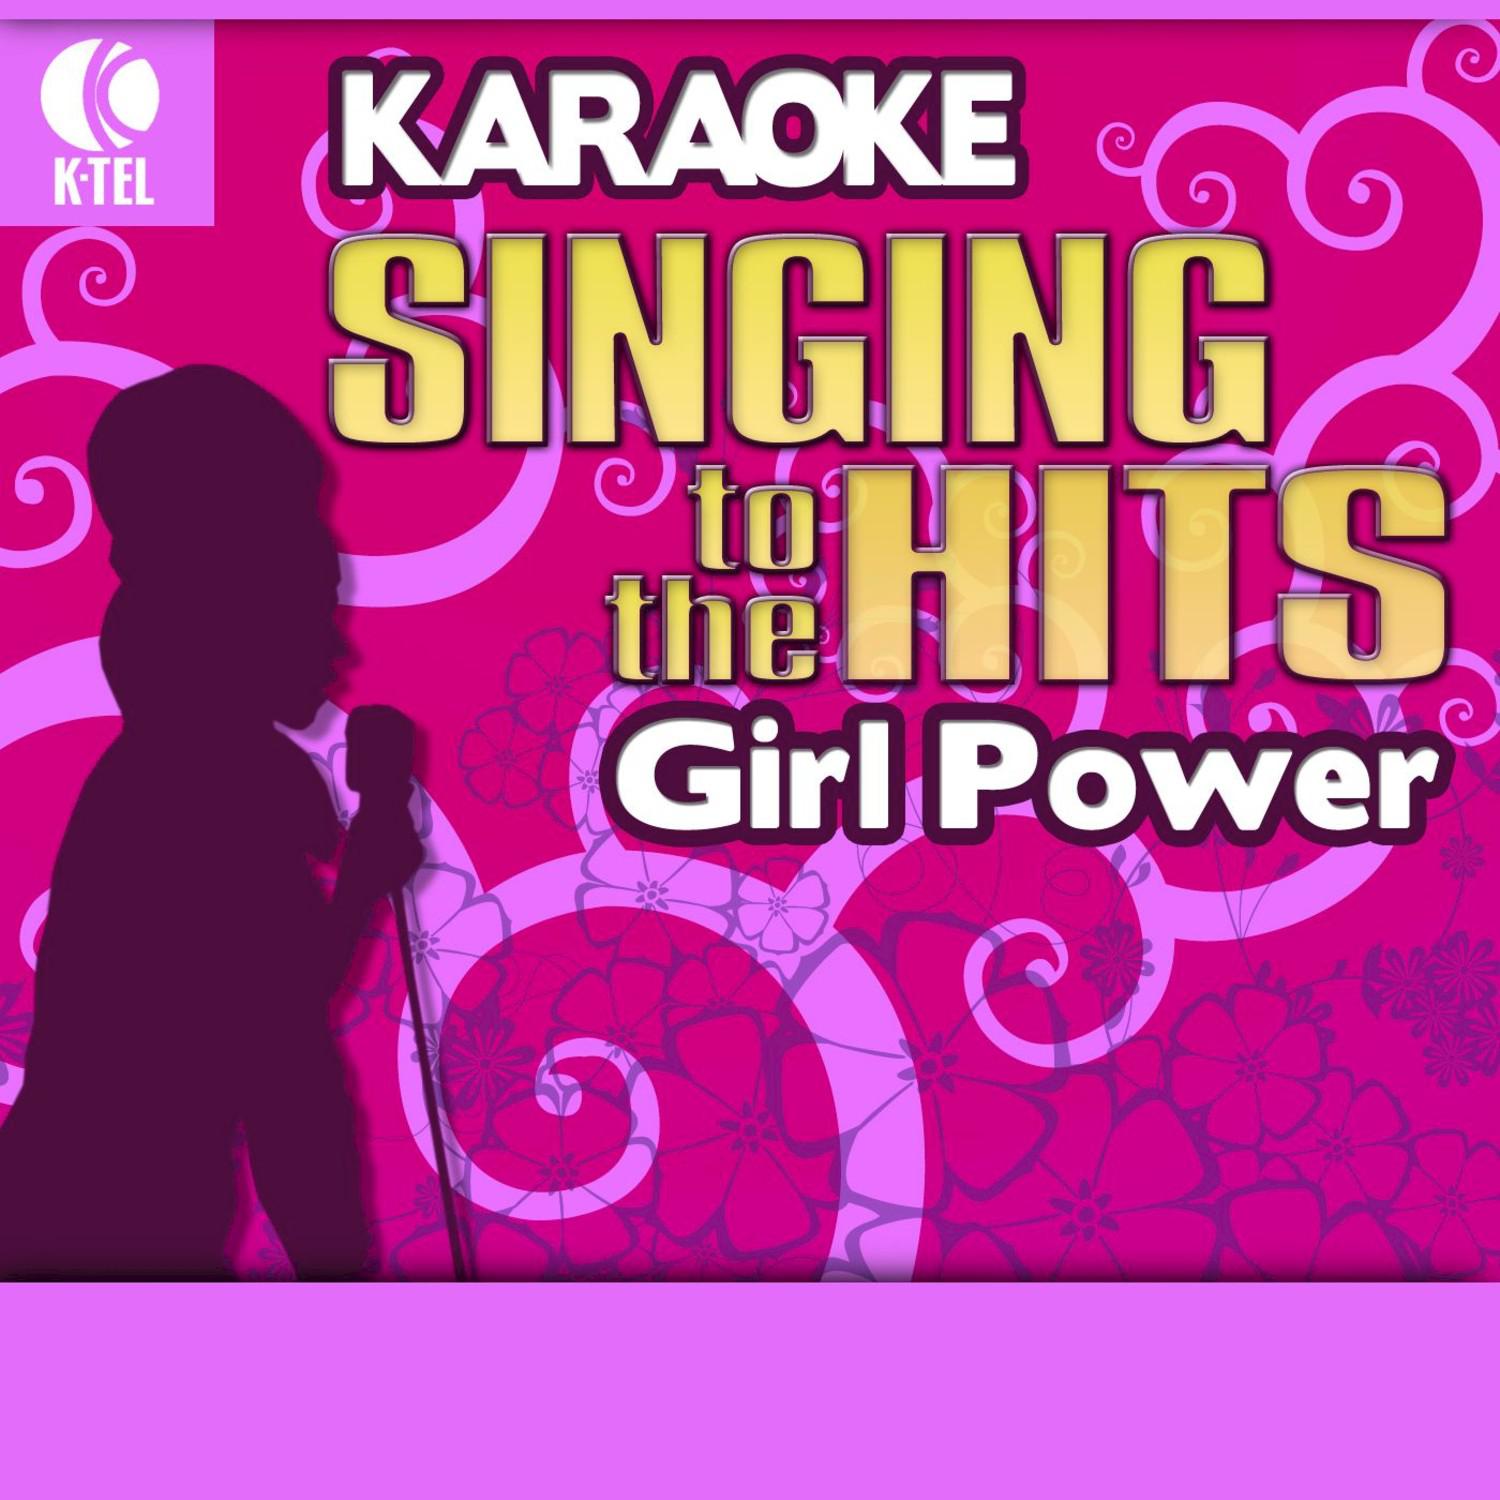 Karaoke: Girl Power - Singing to the Hits